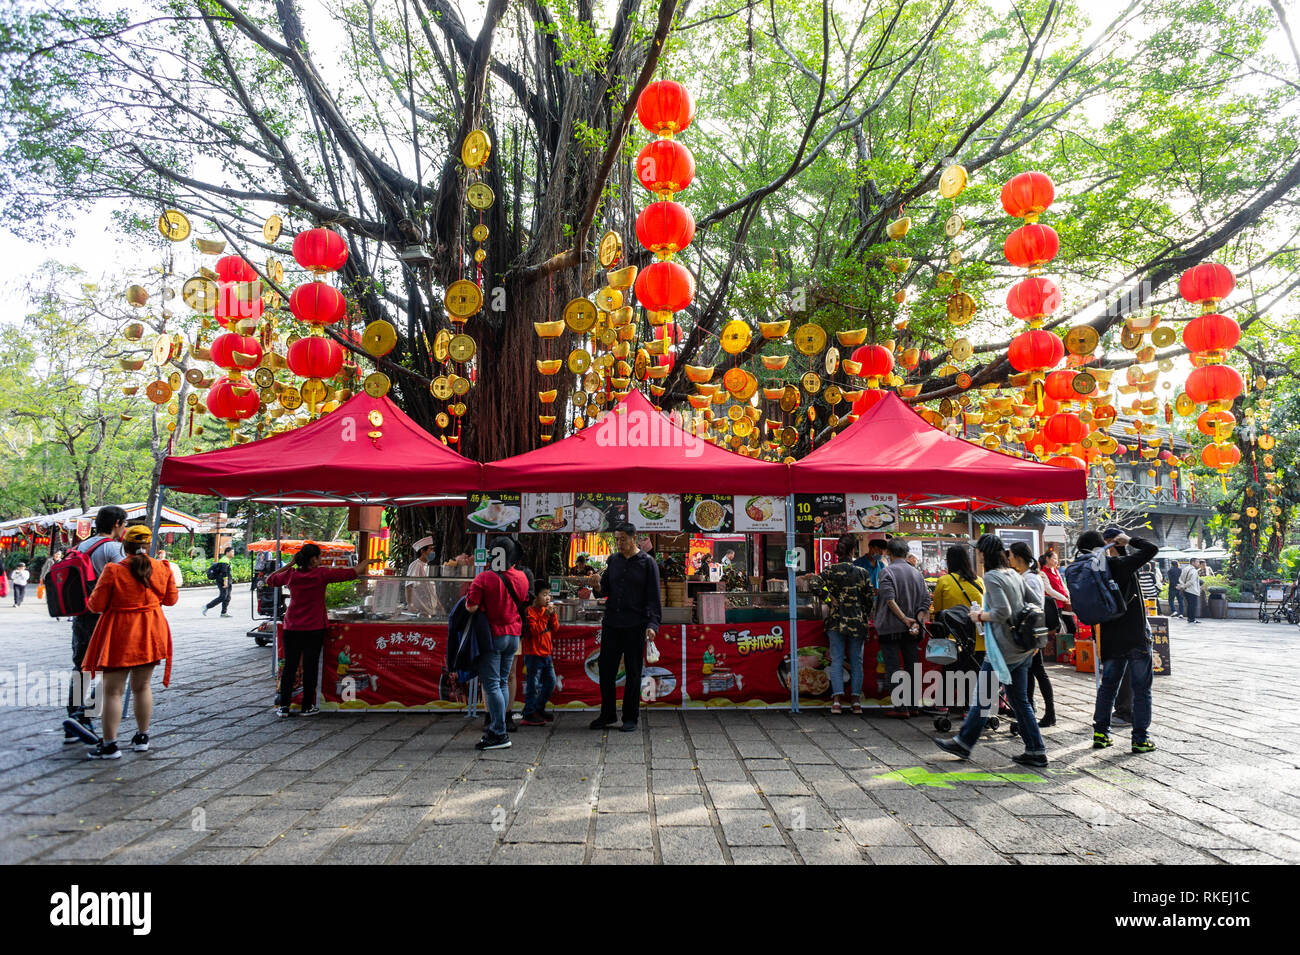 Imbissstände an Laternenfest gefeiert mit bunten Laternen Displays und Dekorationen im Splendid China, chinesische Kultur Themenpark in Shenzhen, China. . Stockfoto